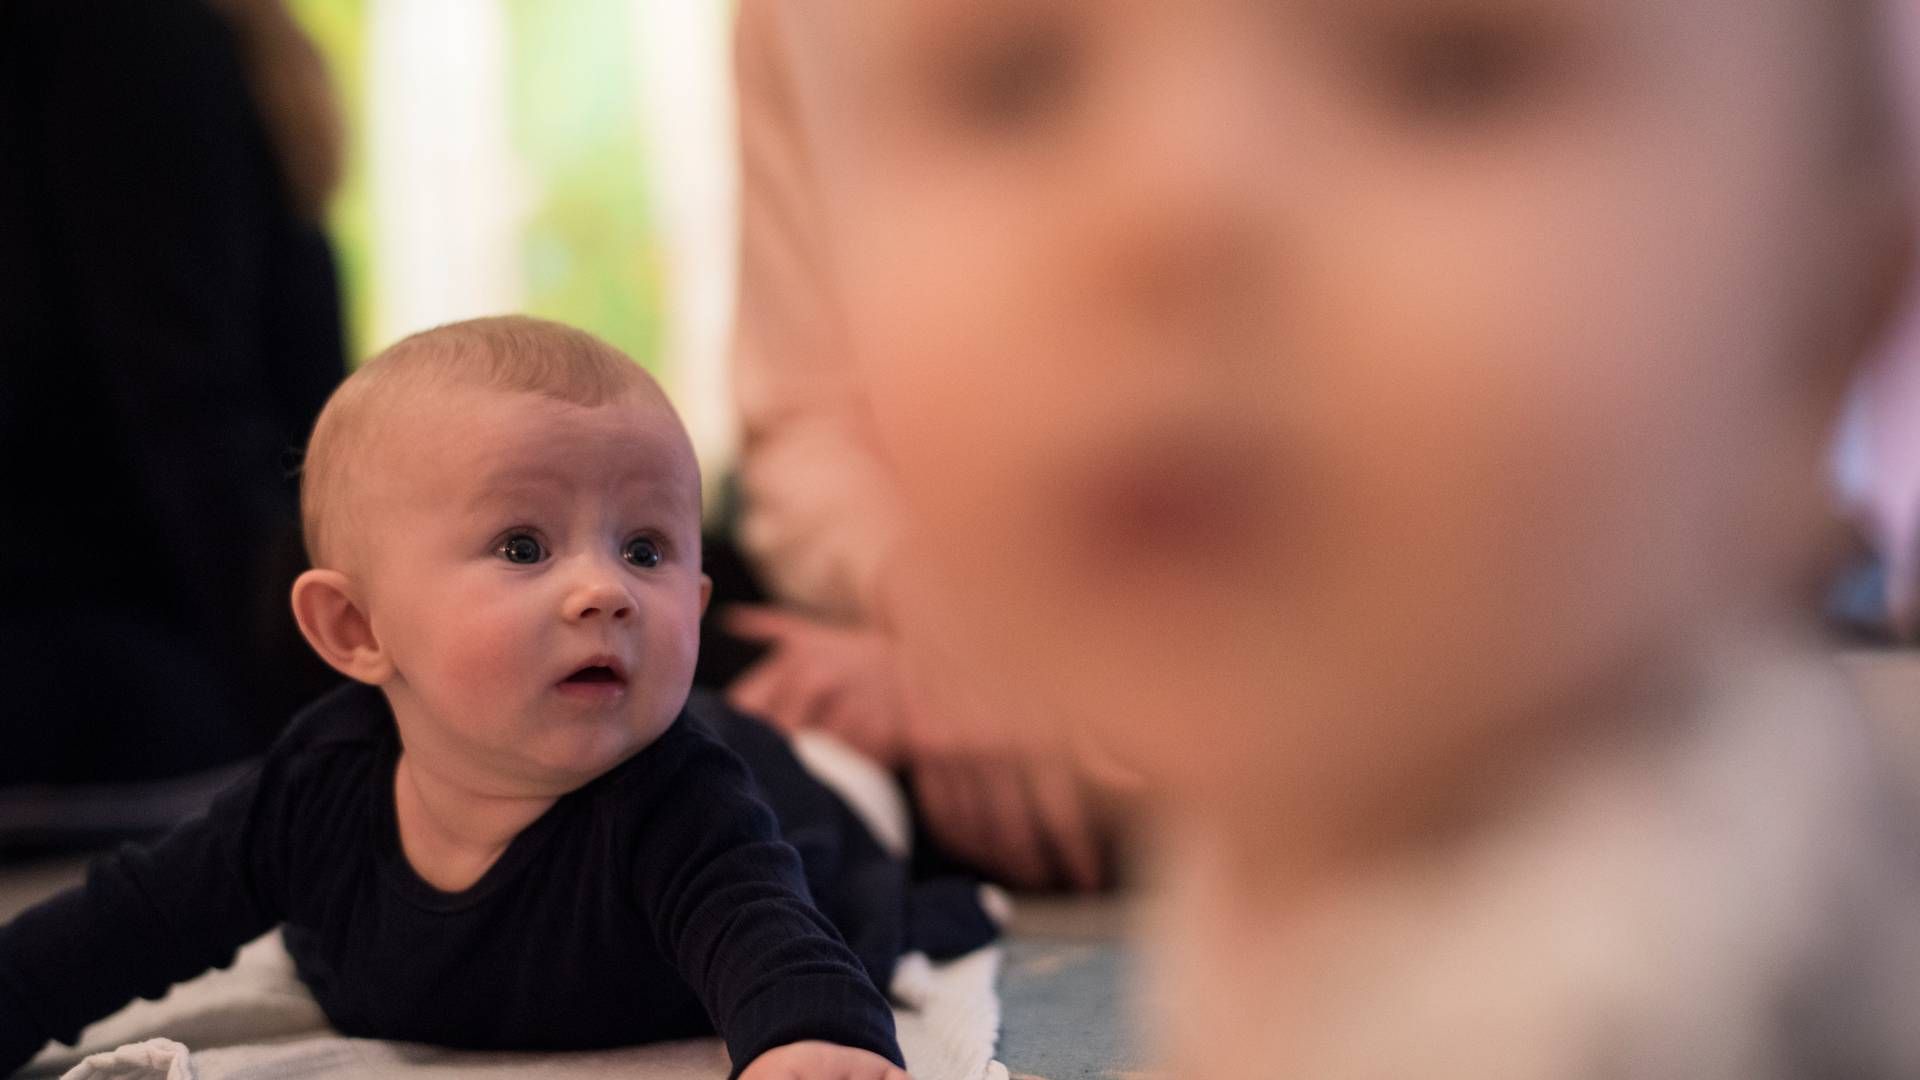 Nye barselsregler vil få fædre til at holde mere barsel, forventer Finansforbundet. | Foto: Ladefoged Joachim/Ritzau Scanpix